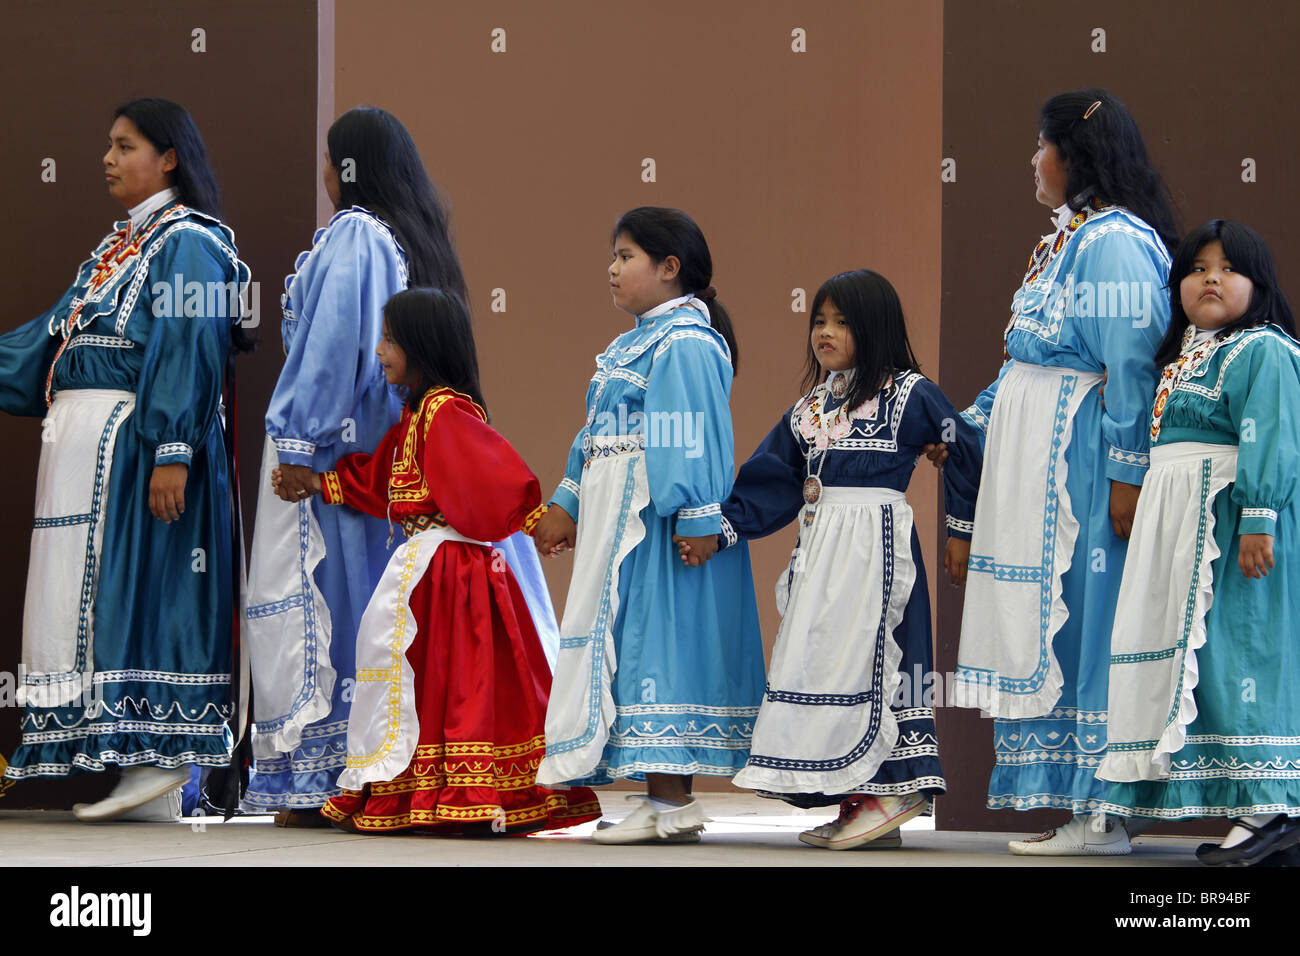 Cherokee, Caroline du Nord - Indiens inscrits Chactaw les femmes et les filles d'effectuer une danse sociale sur scène. Banque D'Images